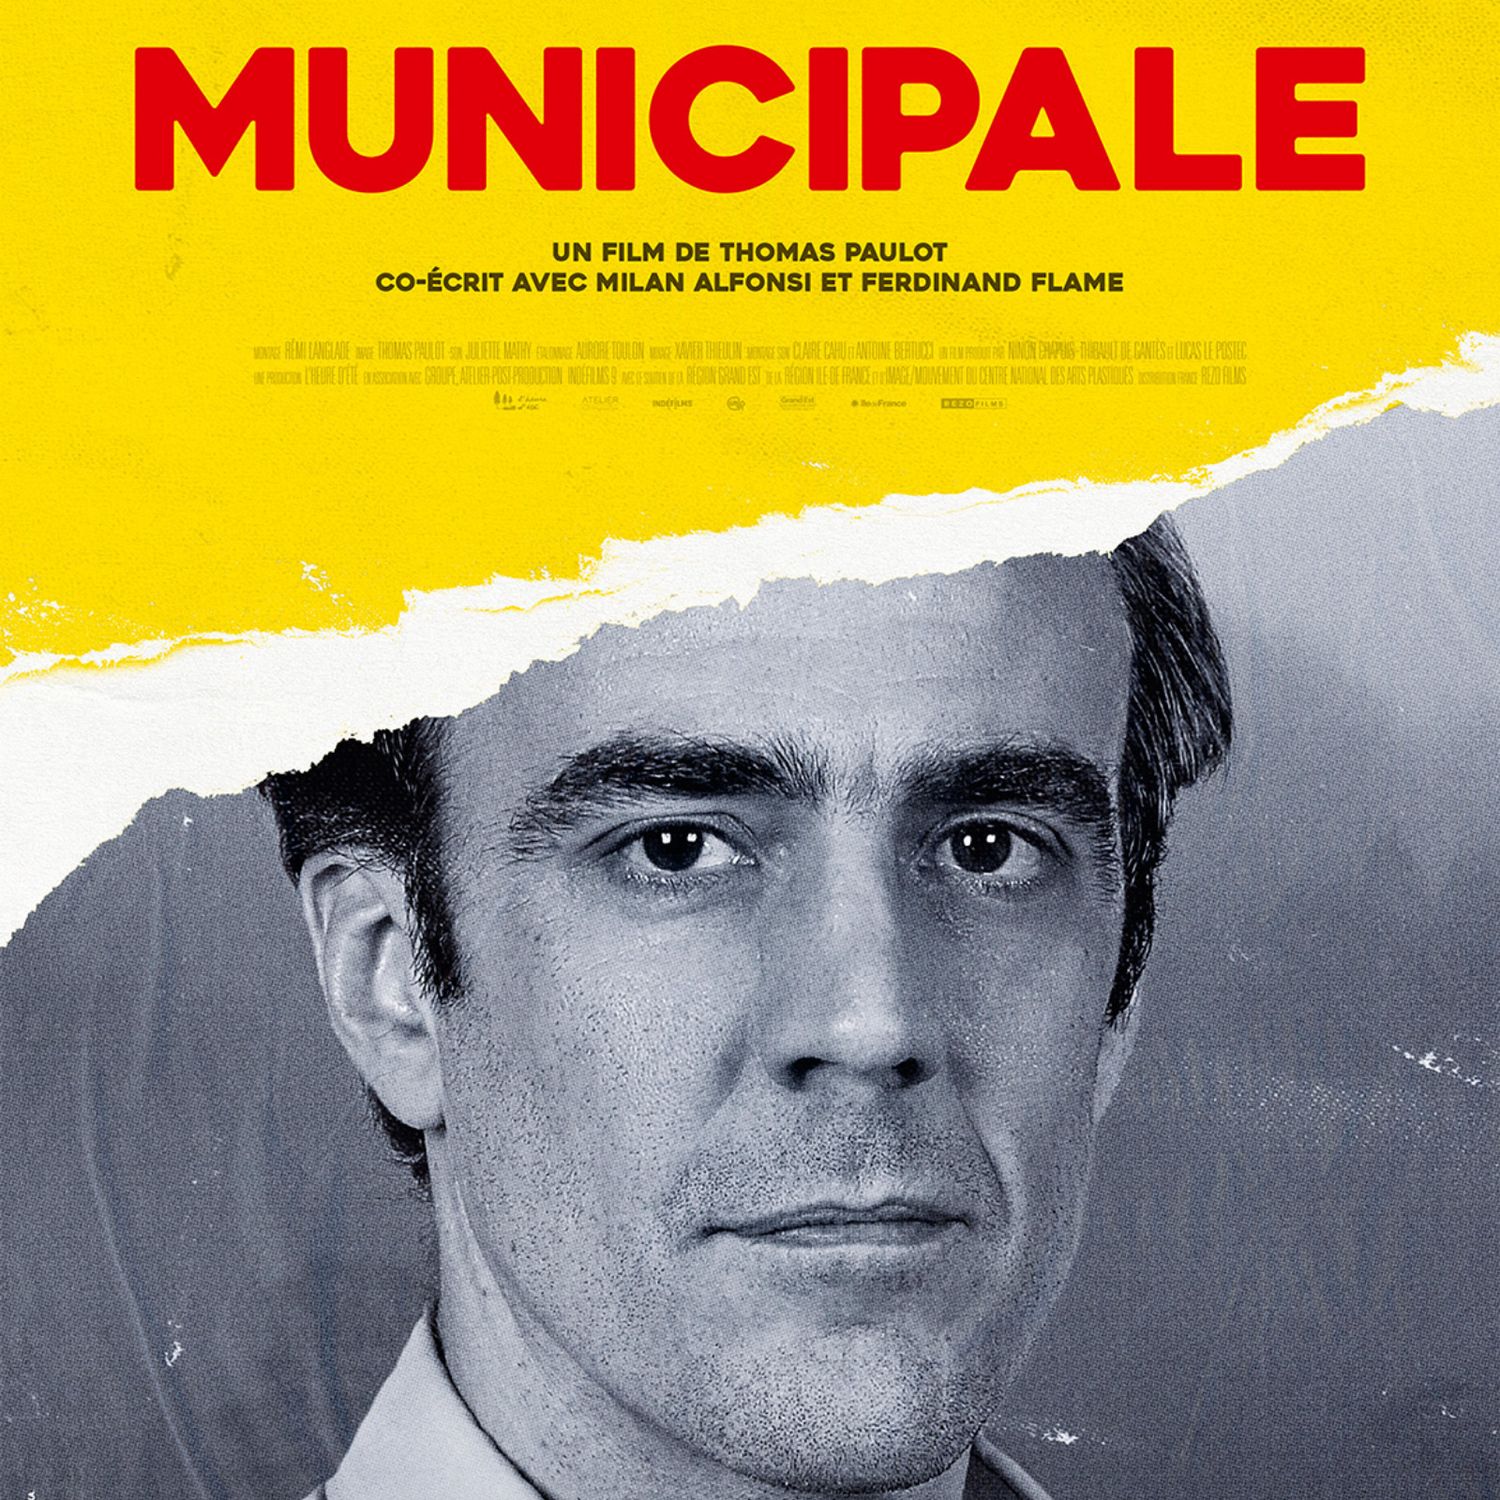 Le film "Municipale" tourné à Revin projeté sur grand écran